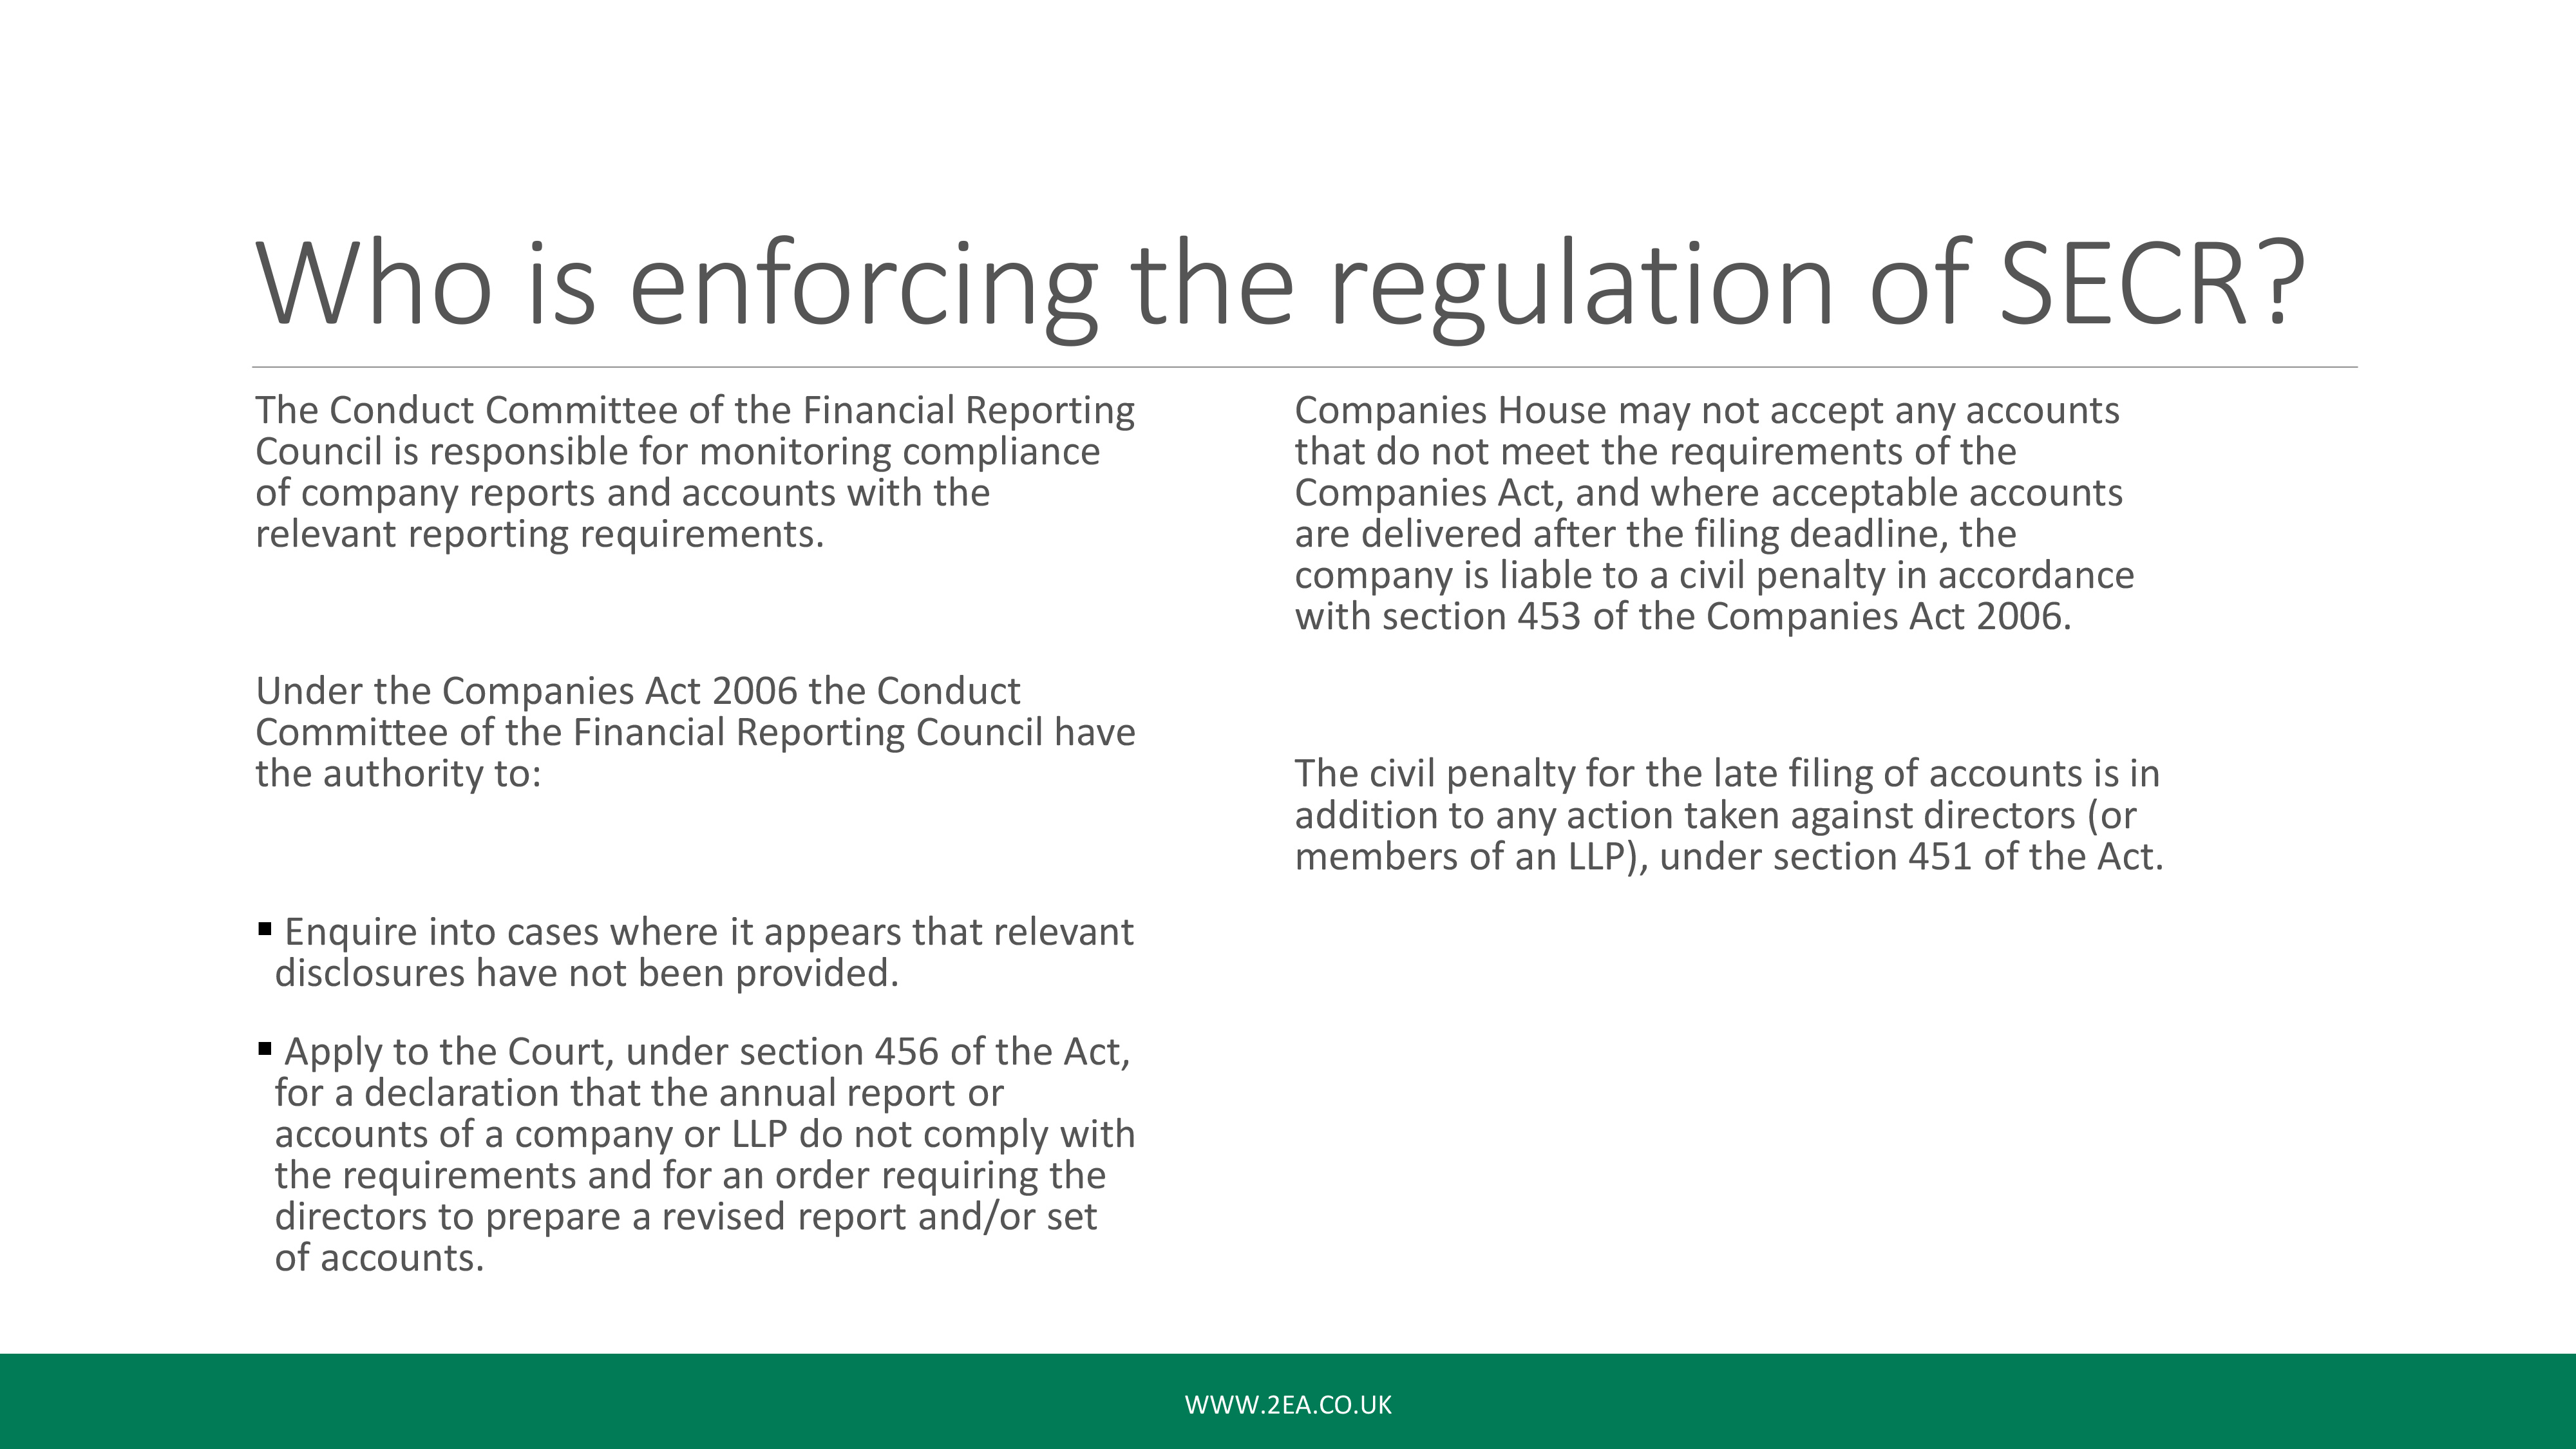 SECR Webinar: Who is Enforcing the Regulation?